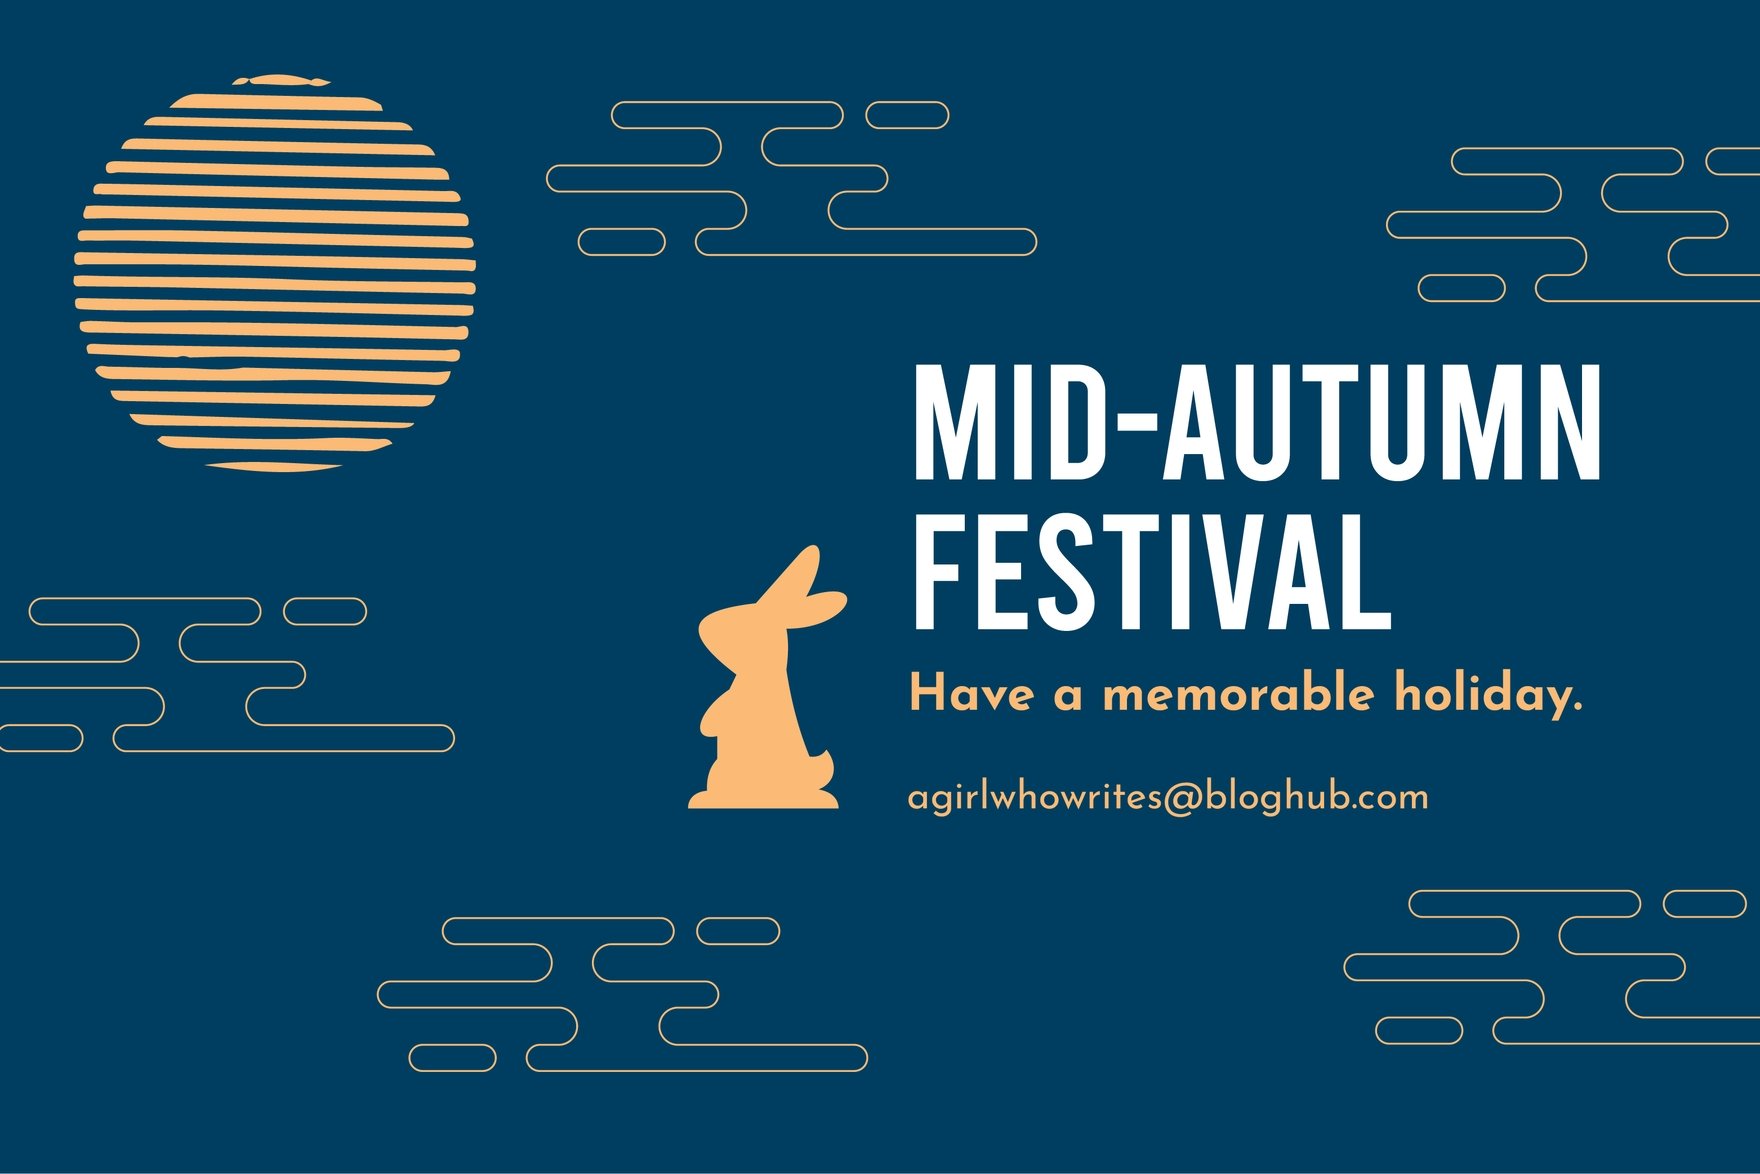 Mid-Autumn Festival Blog Banner in Illustrator, PSD, EPS, SVG, JPG, PNG